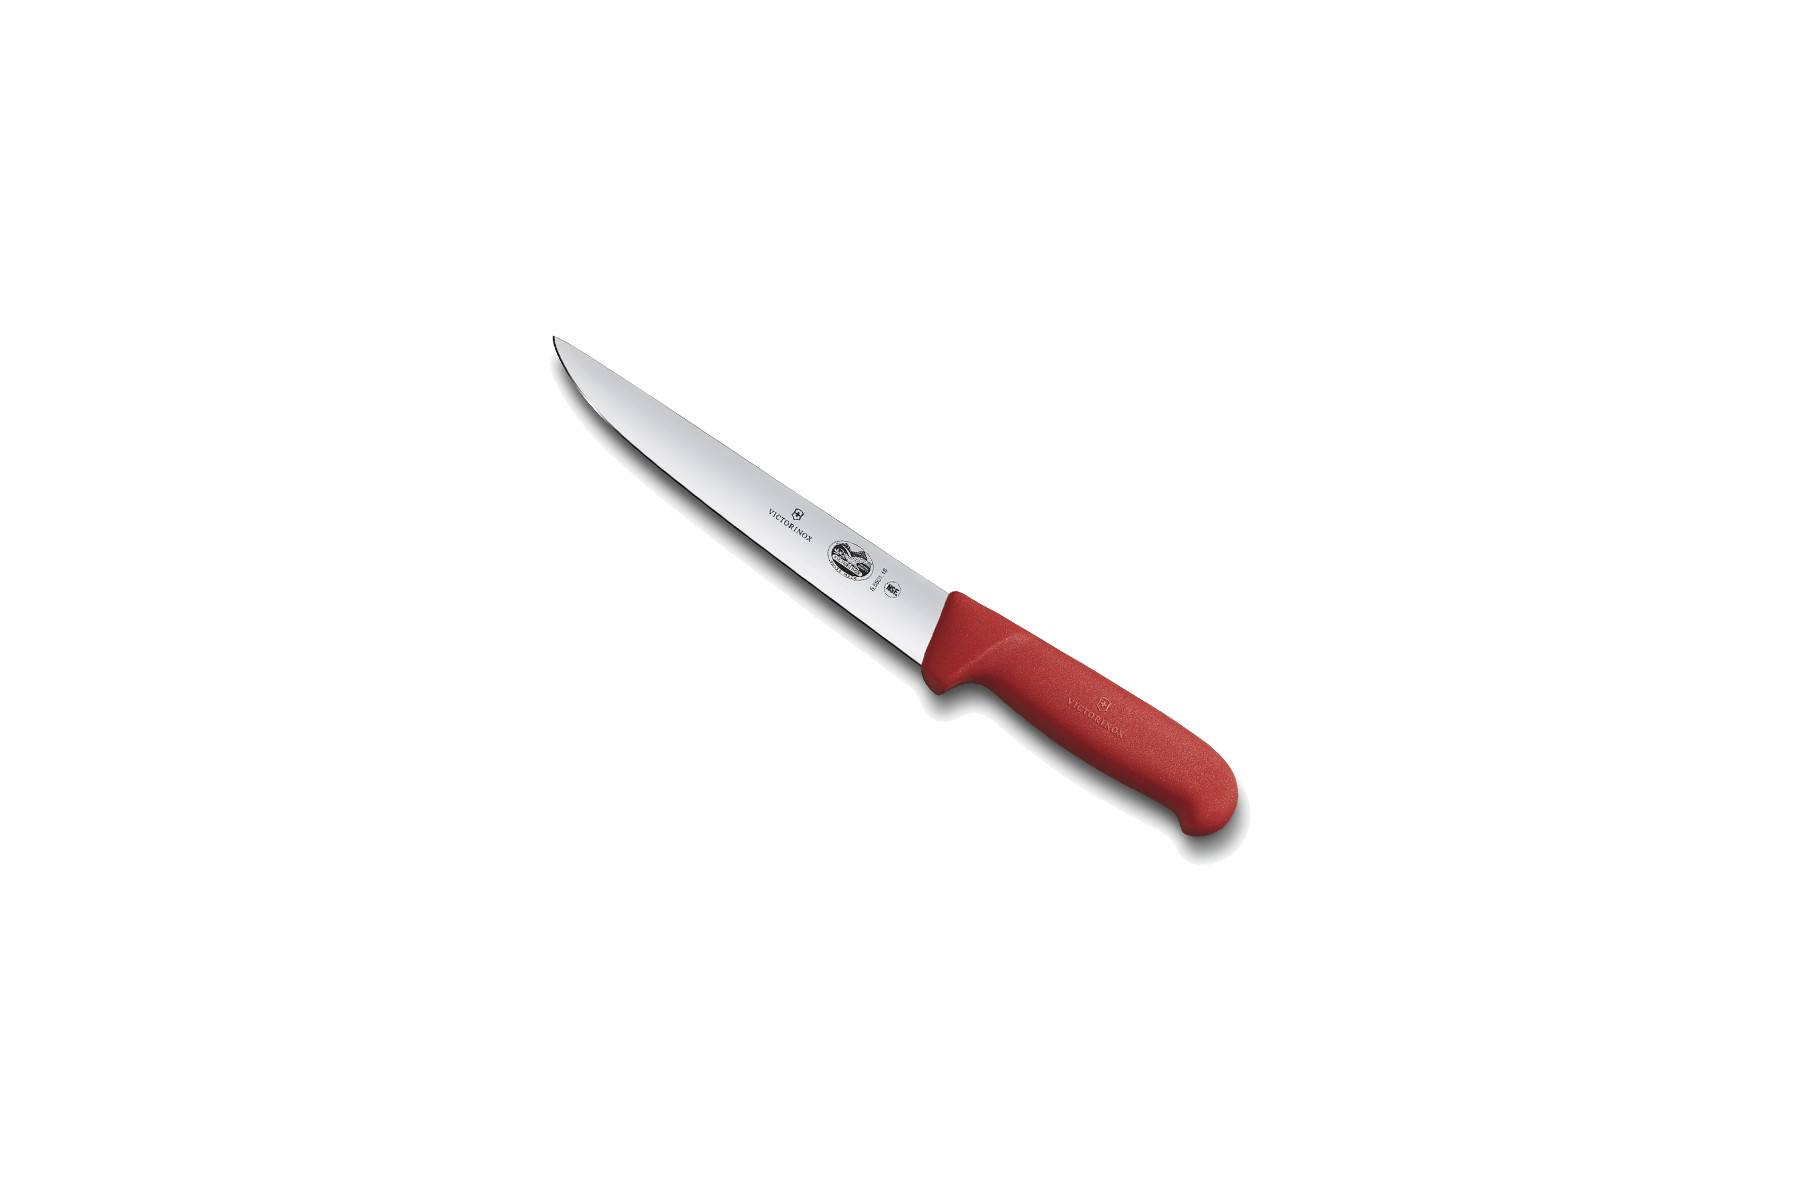 Couteau à saigner/découper Victorinox lame 22 cm - Manche Fibrox rouge